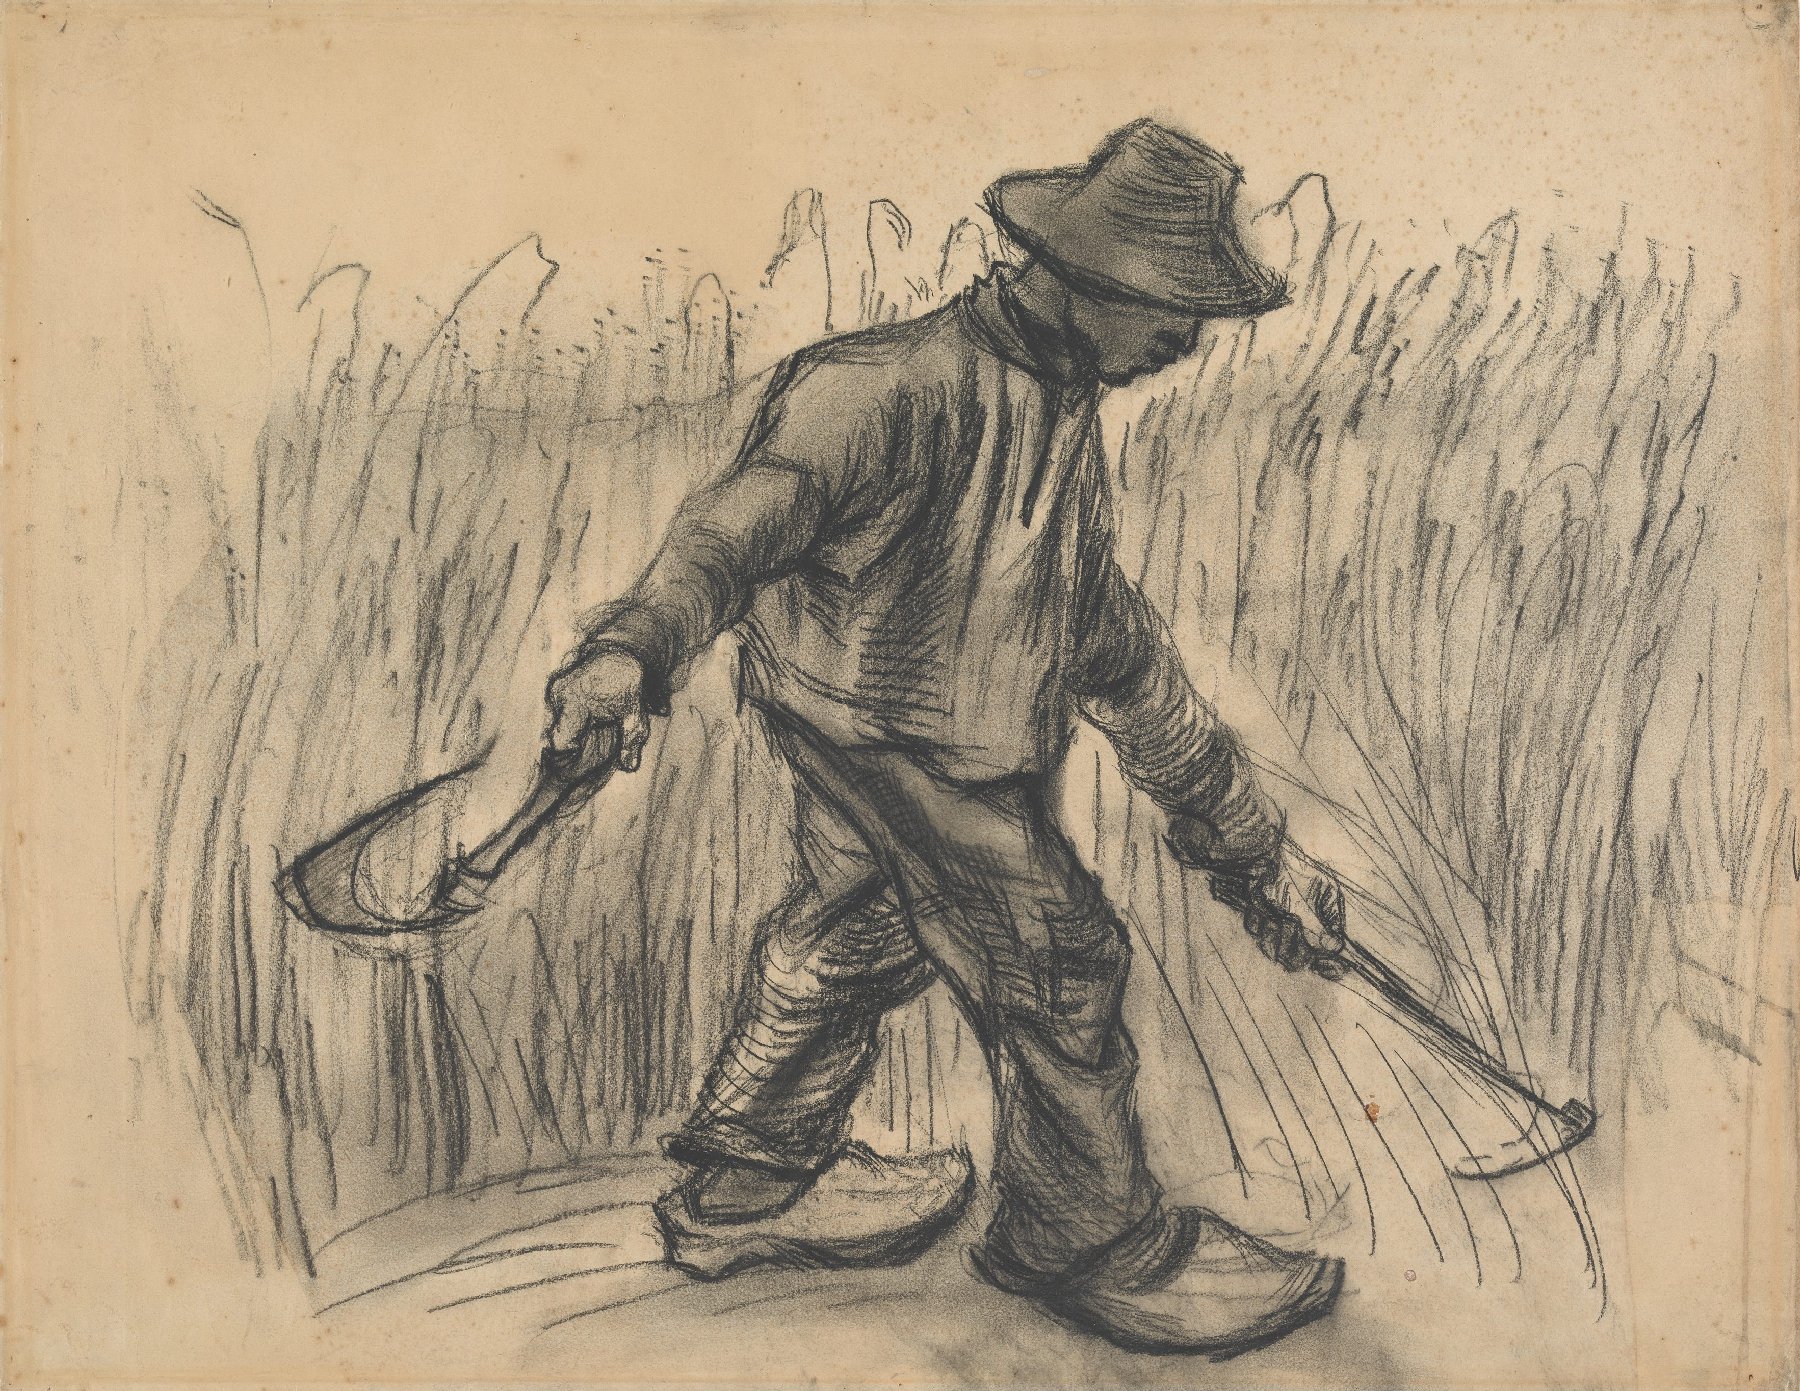 Maaier Vincent van Gogh (1853 - 1890), Nuenen, juli-september 1885